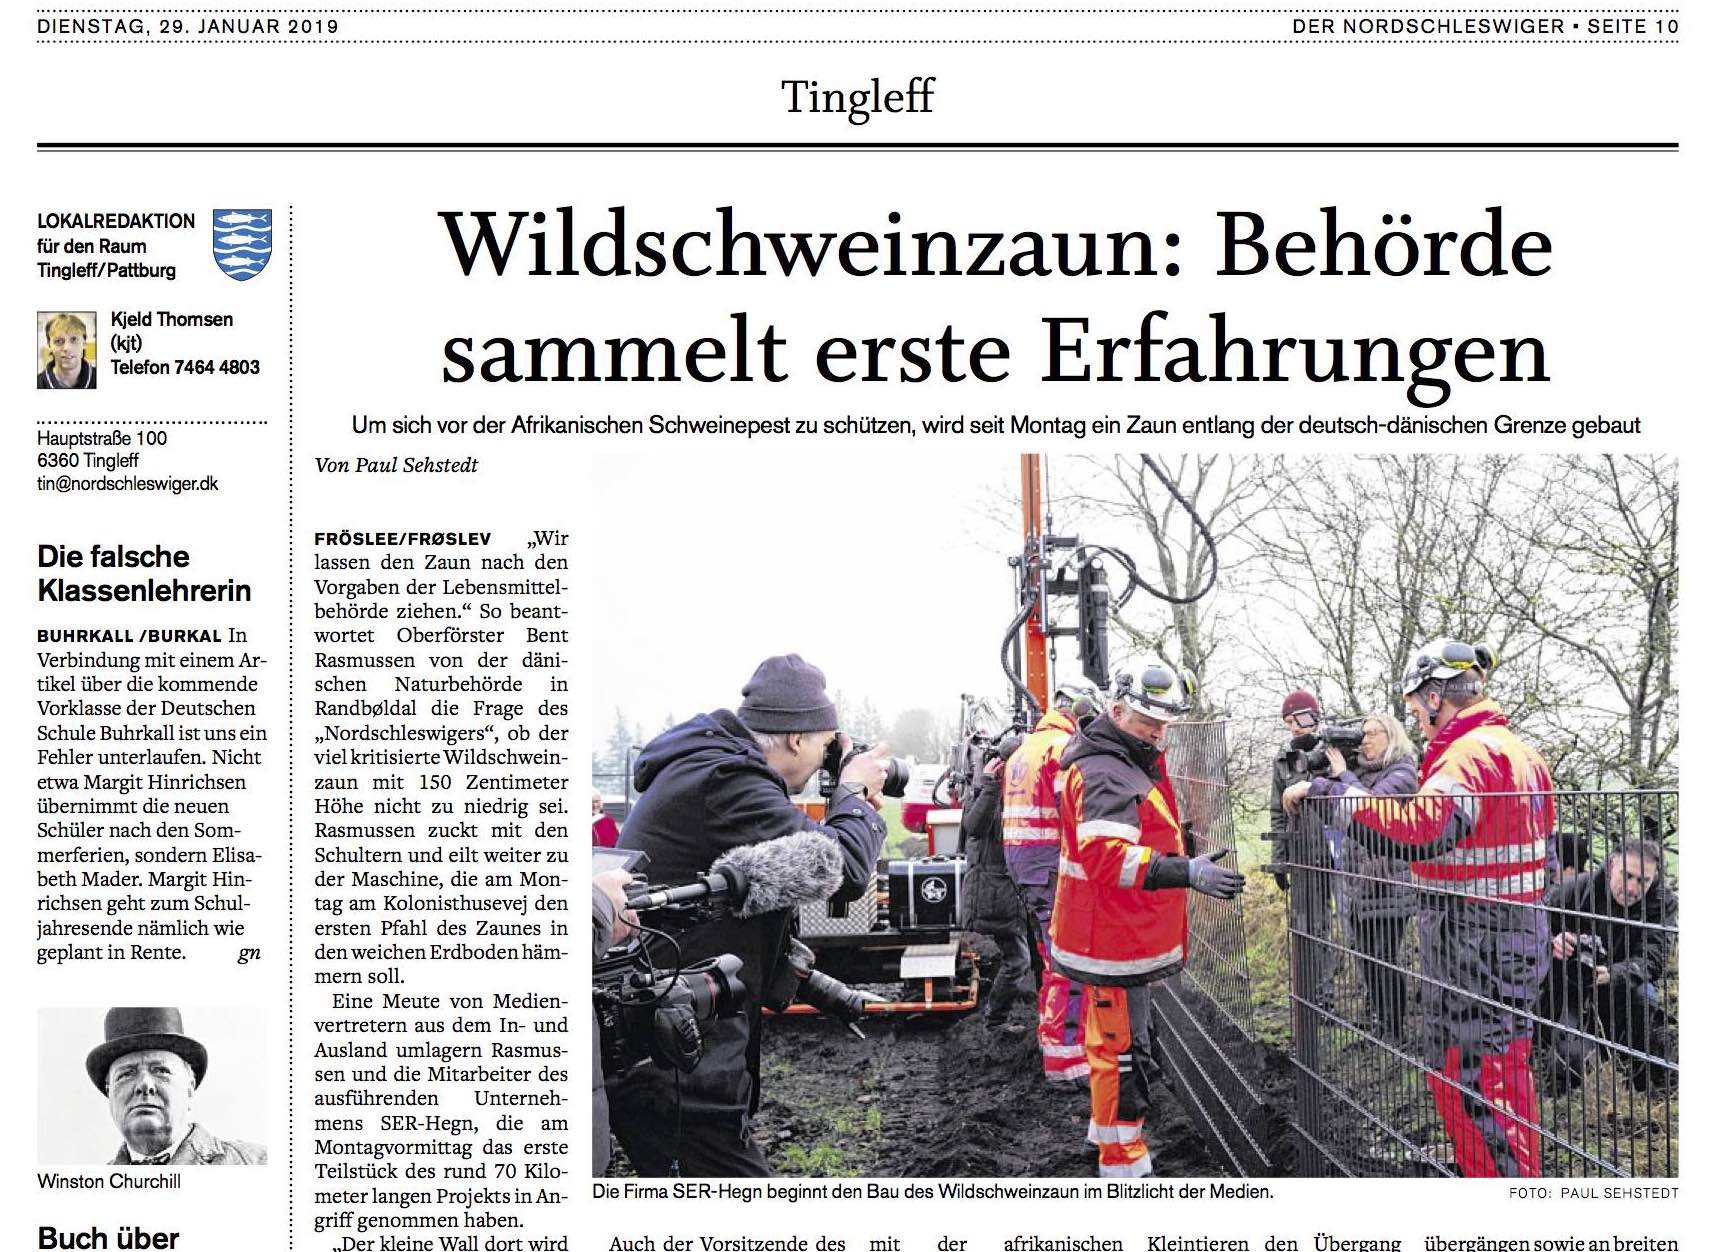 Die Zeitung Der Nordschleswiger berichtete über den Bau des Wildschweinzauns an der deutsch-dänischen Grenze.